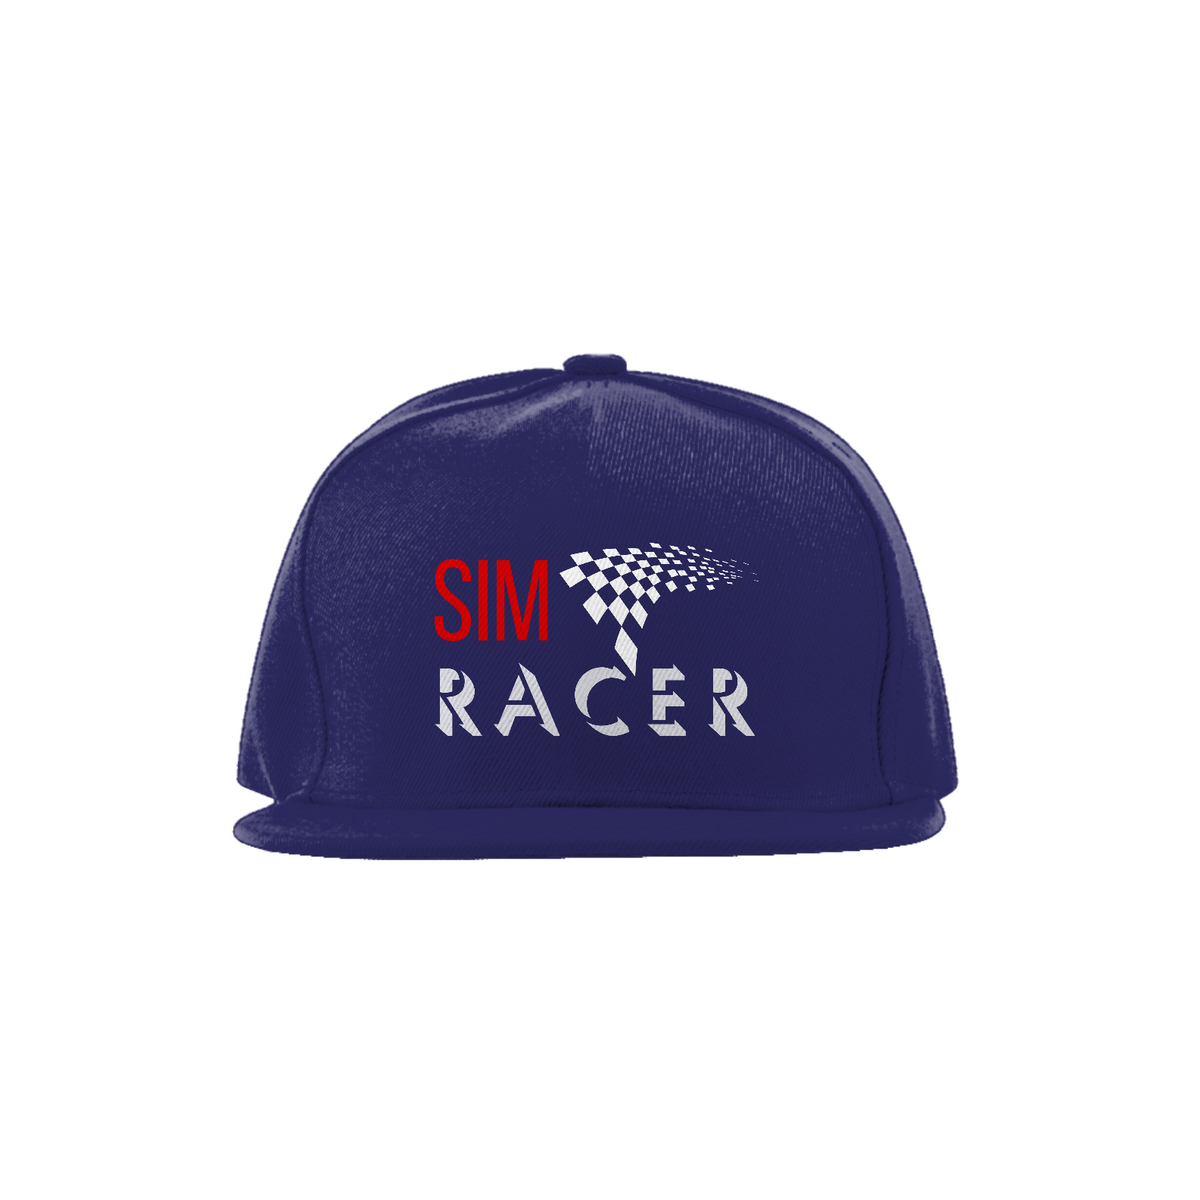 Nome do produto: SIM RACER